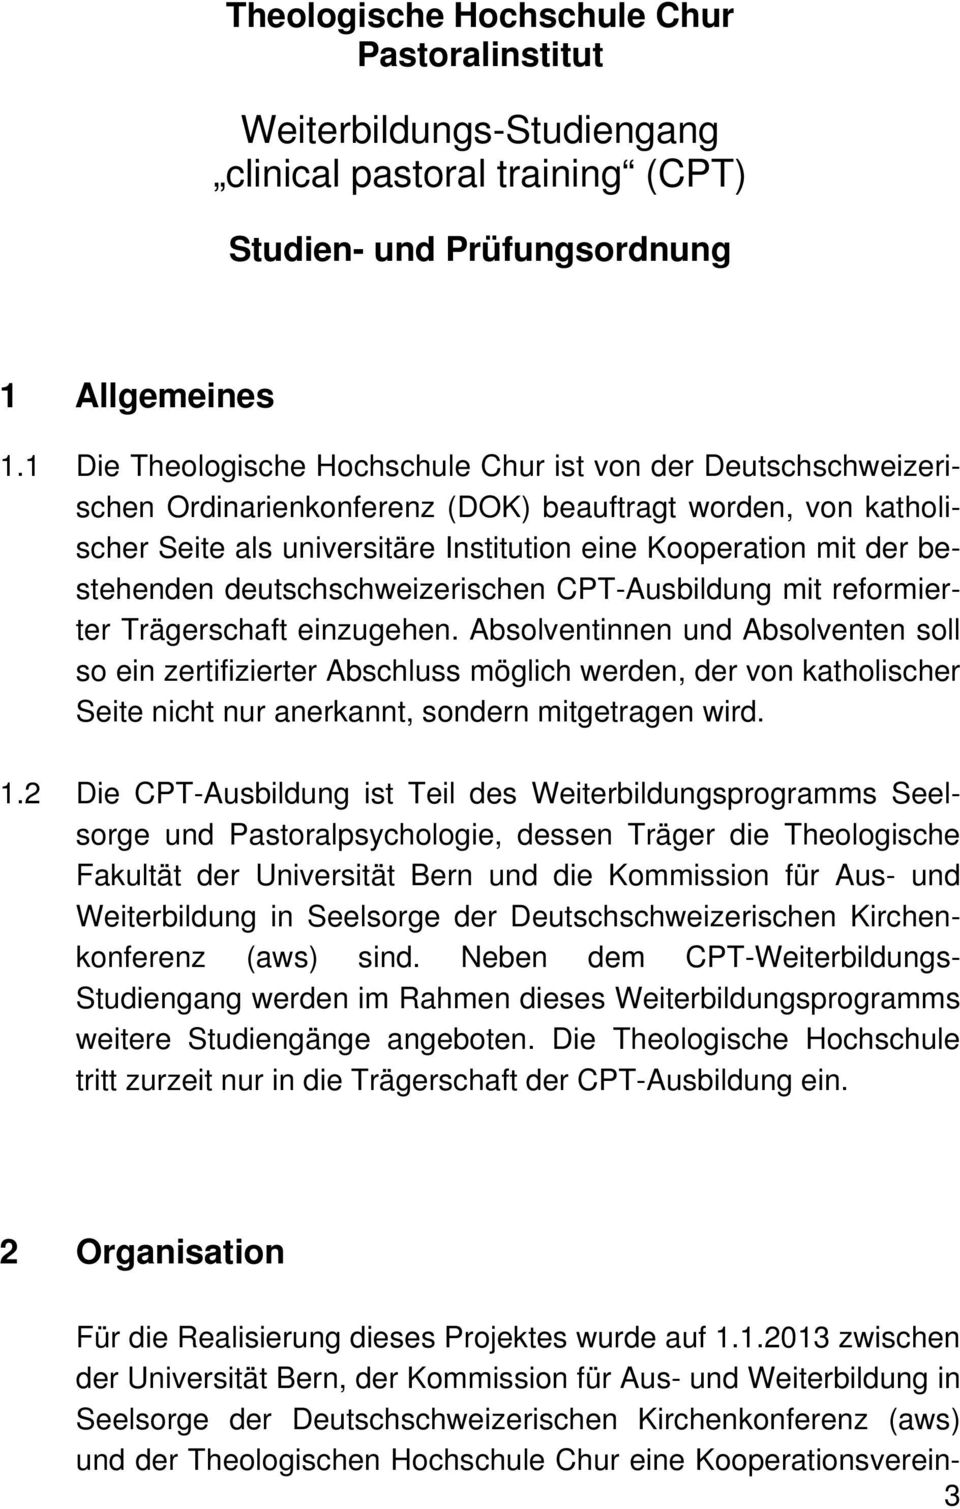 bestehenden deutschschweizerischen CPT-Ausbildung mit reformierter Trägerschaft einzugehen.